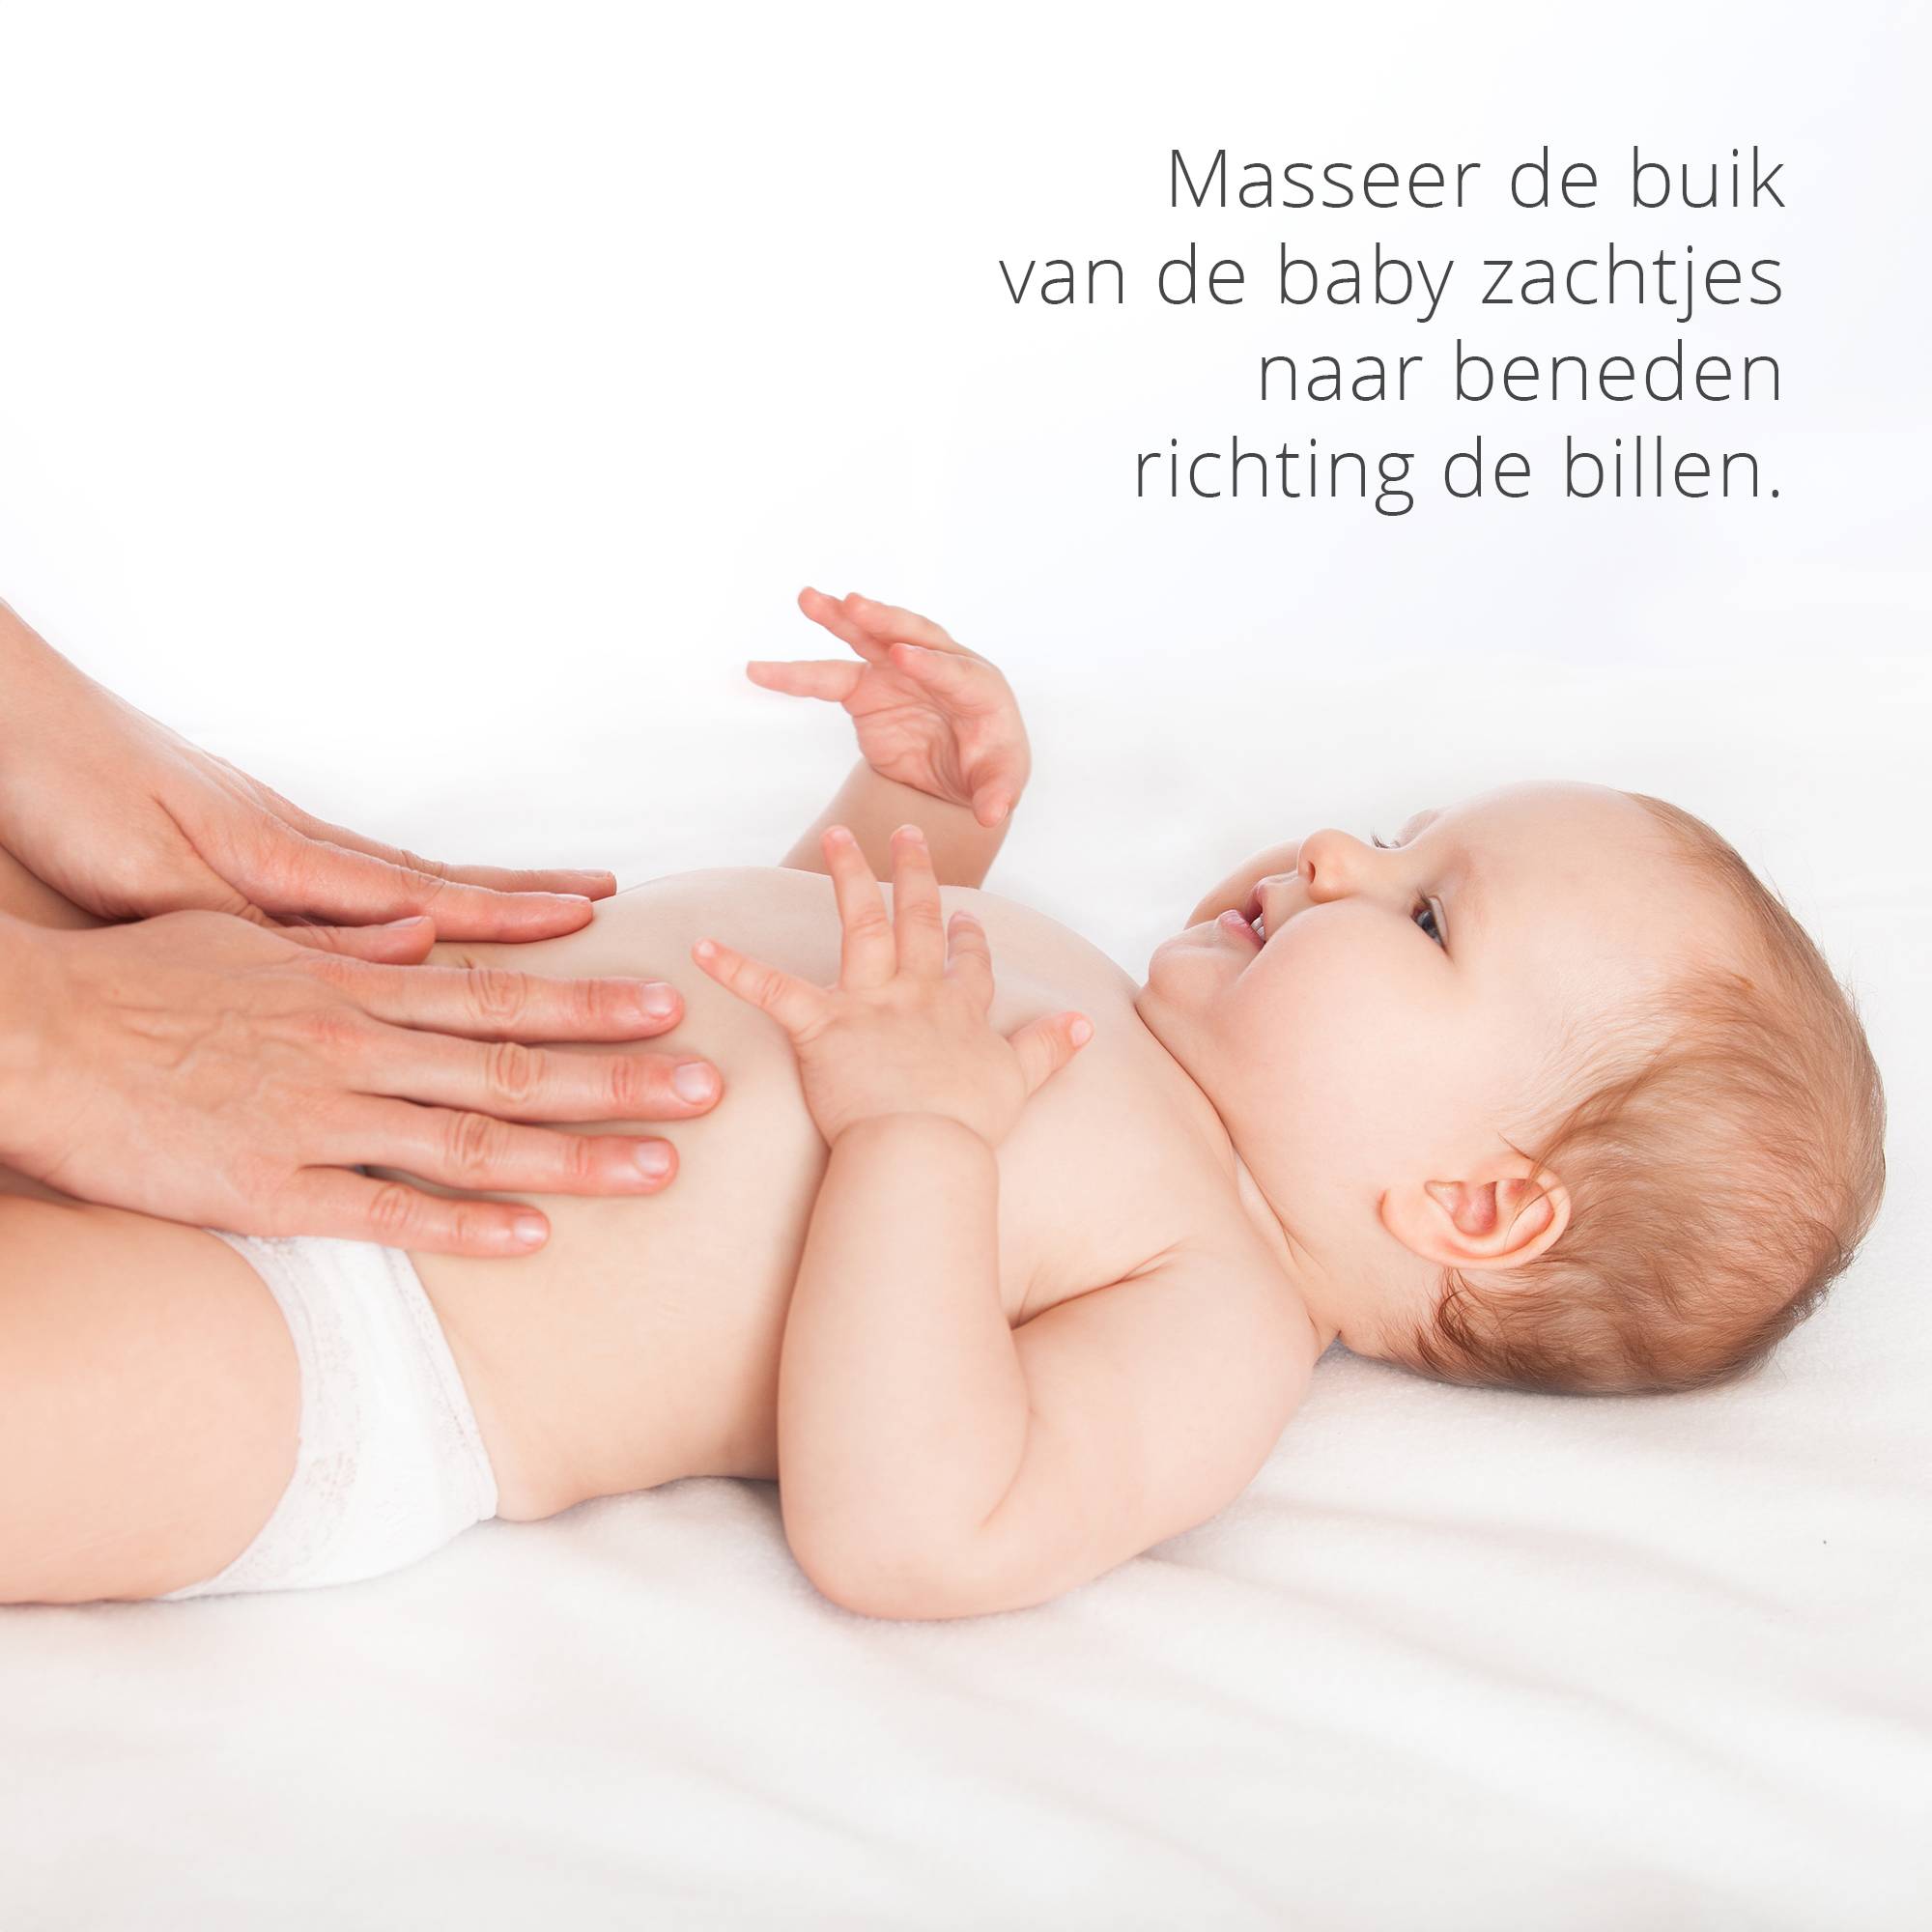 Luvion Gassi Gebruiksaanwijzing: masseer zachtjes over de buik van de baby naar richting de billen